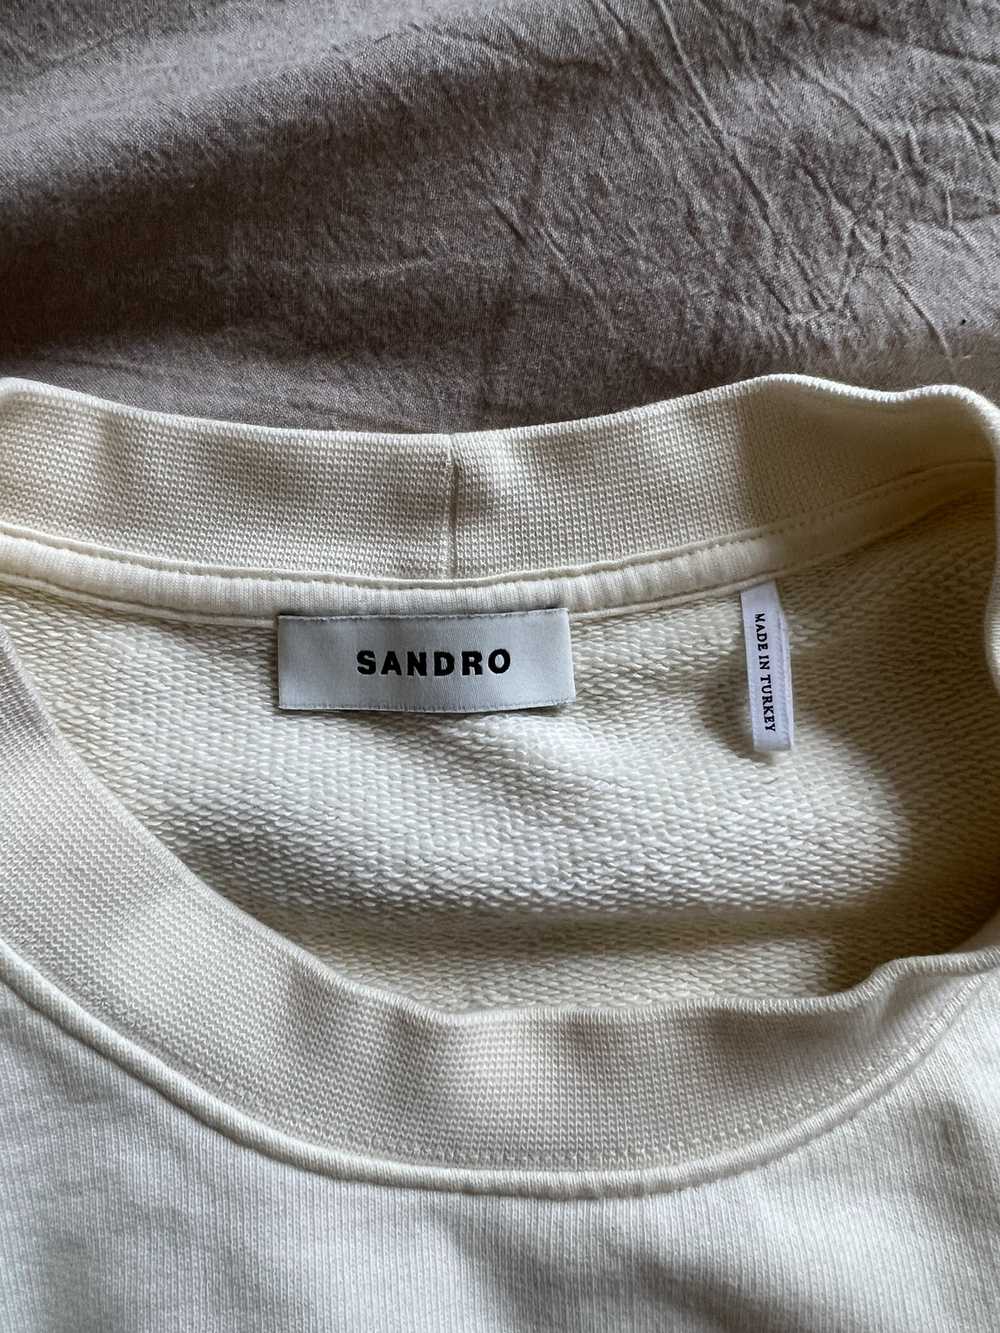 Sandro Sandro Sun Flower Sweatshirt - image 4